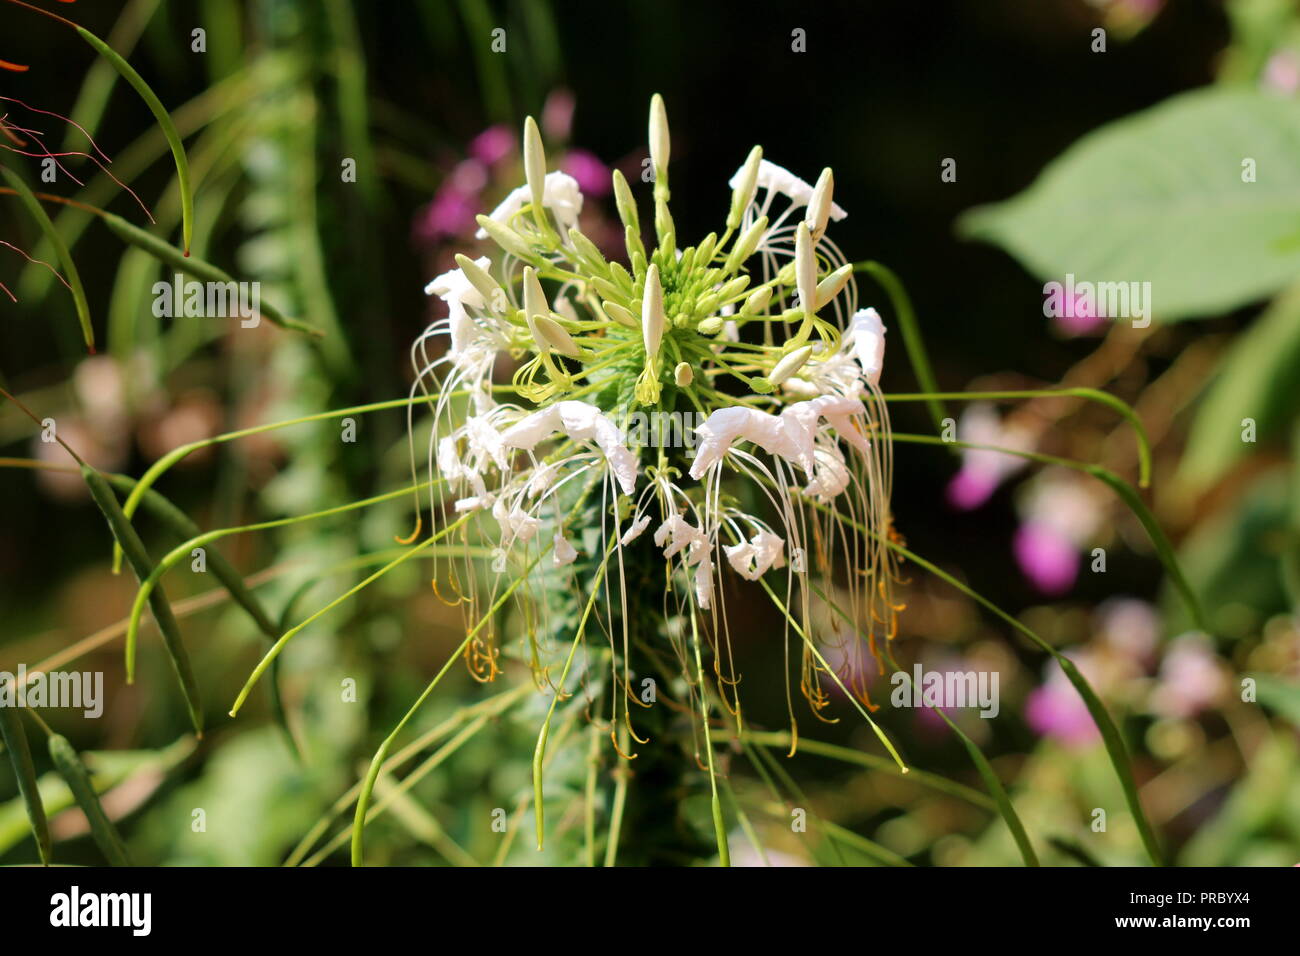 Cleome hassleriana araignée fleur ou plante florifère annuelle avec des fleurs blanches et étamines en commençant à se flétrir sur fond de feuilles vert foncé Banque D'Images